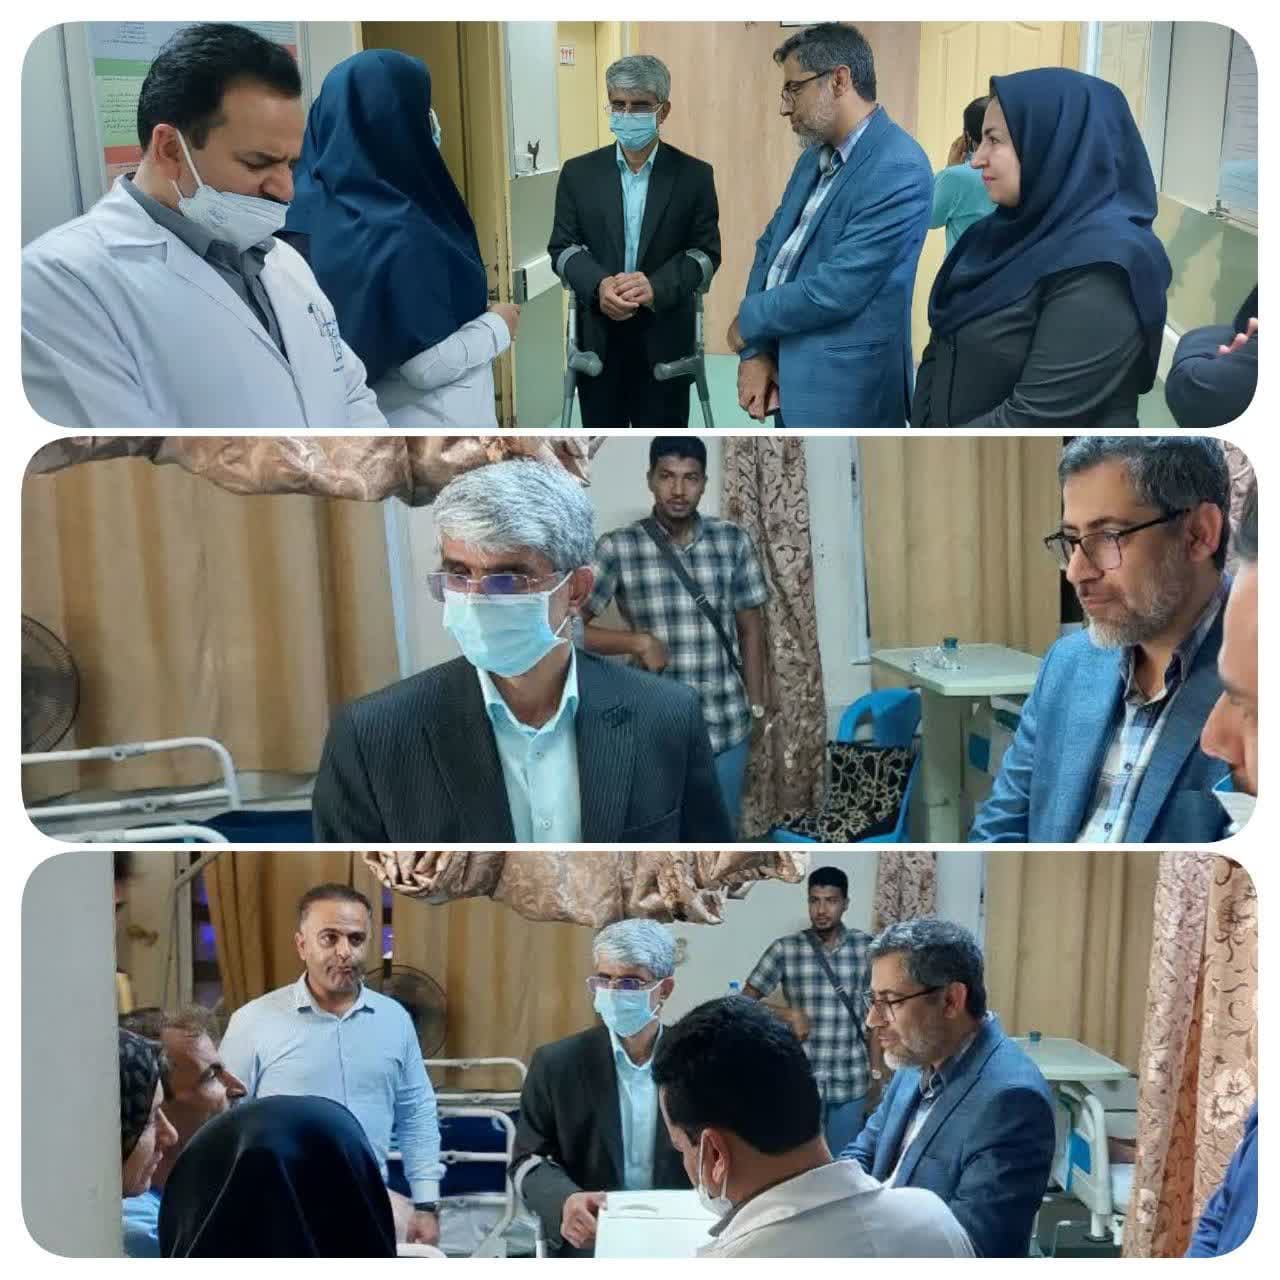 بازدید سرزده و شبانه رییس دانشگاه علوم پزشکی هرمزگان از بیمارستان شهیدمحمدی